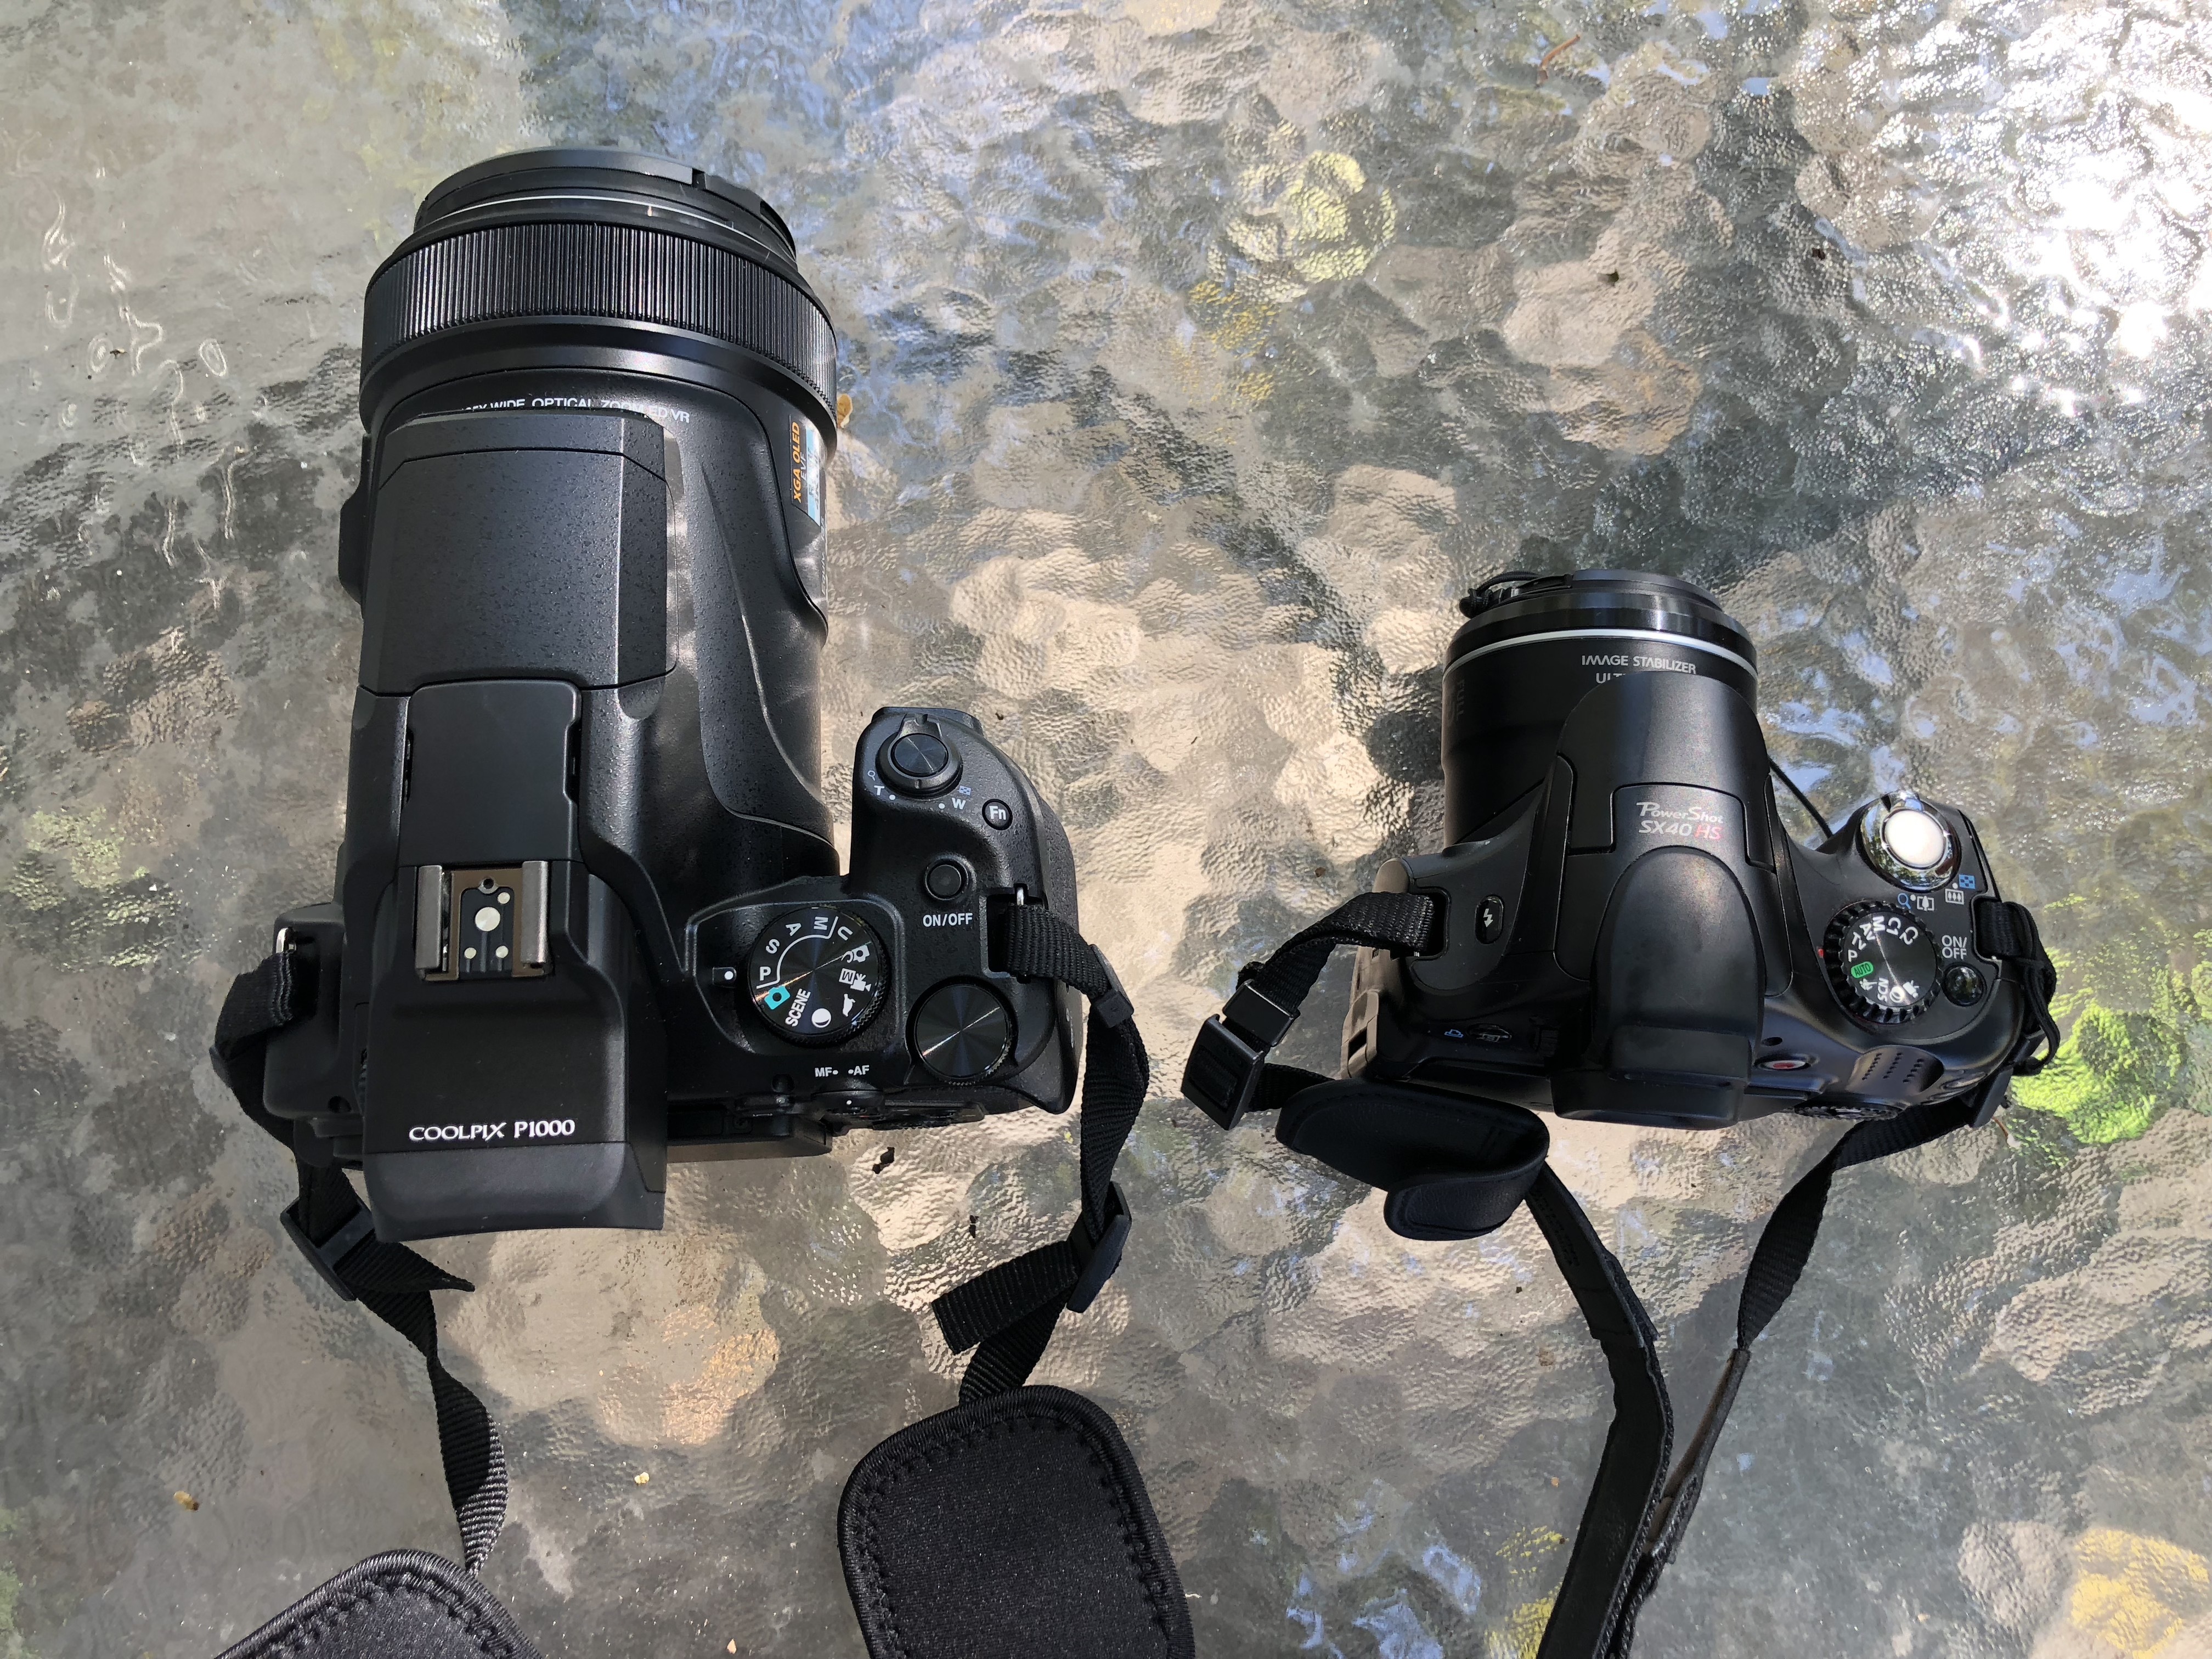 Canon SX40HS vs Nikon P1000